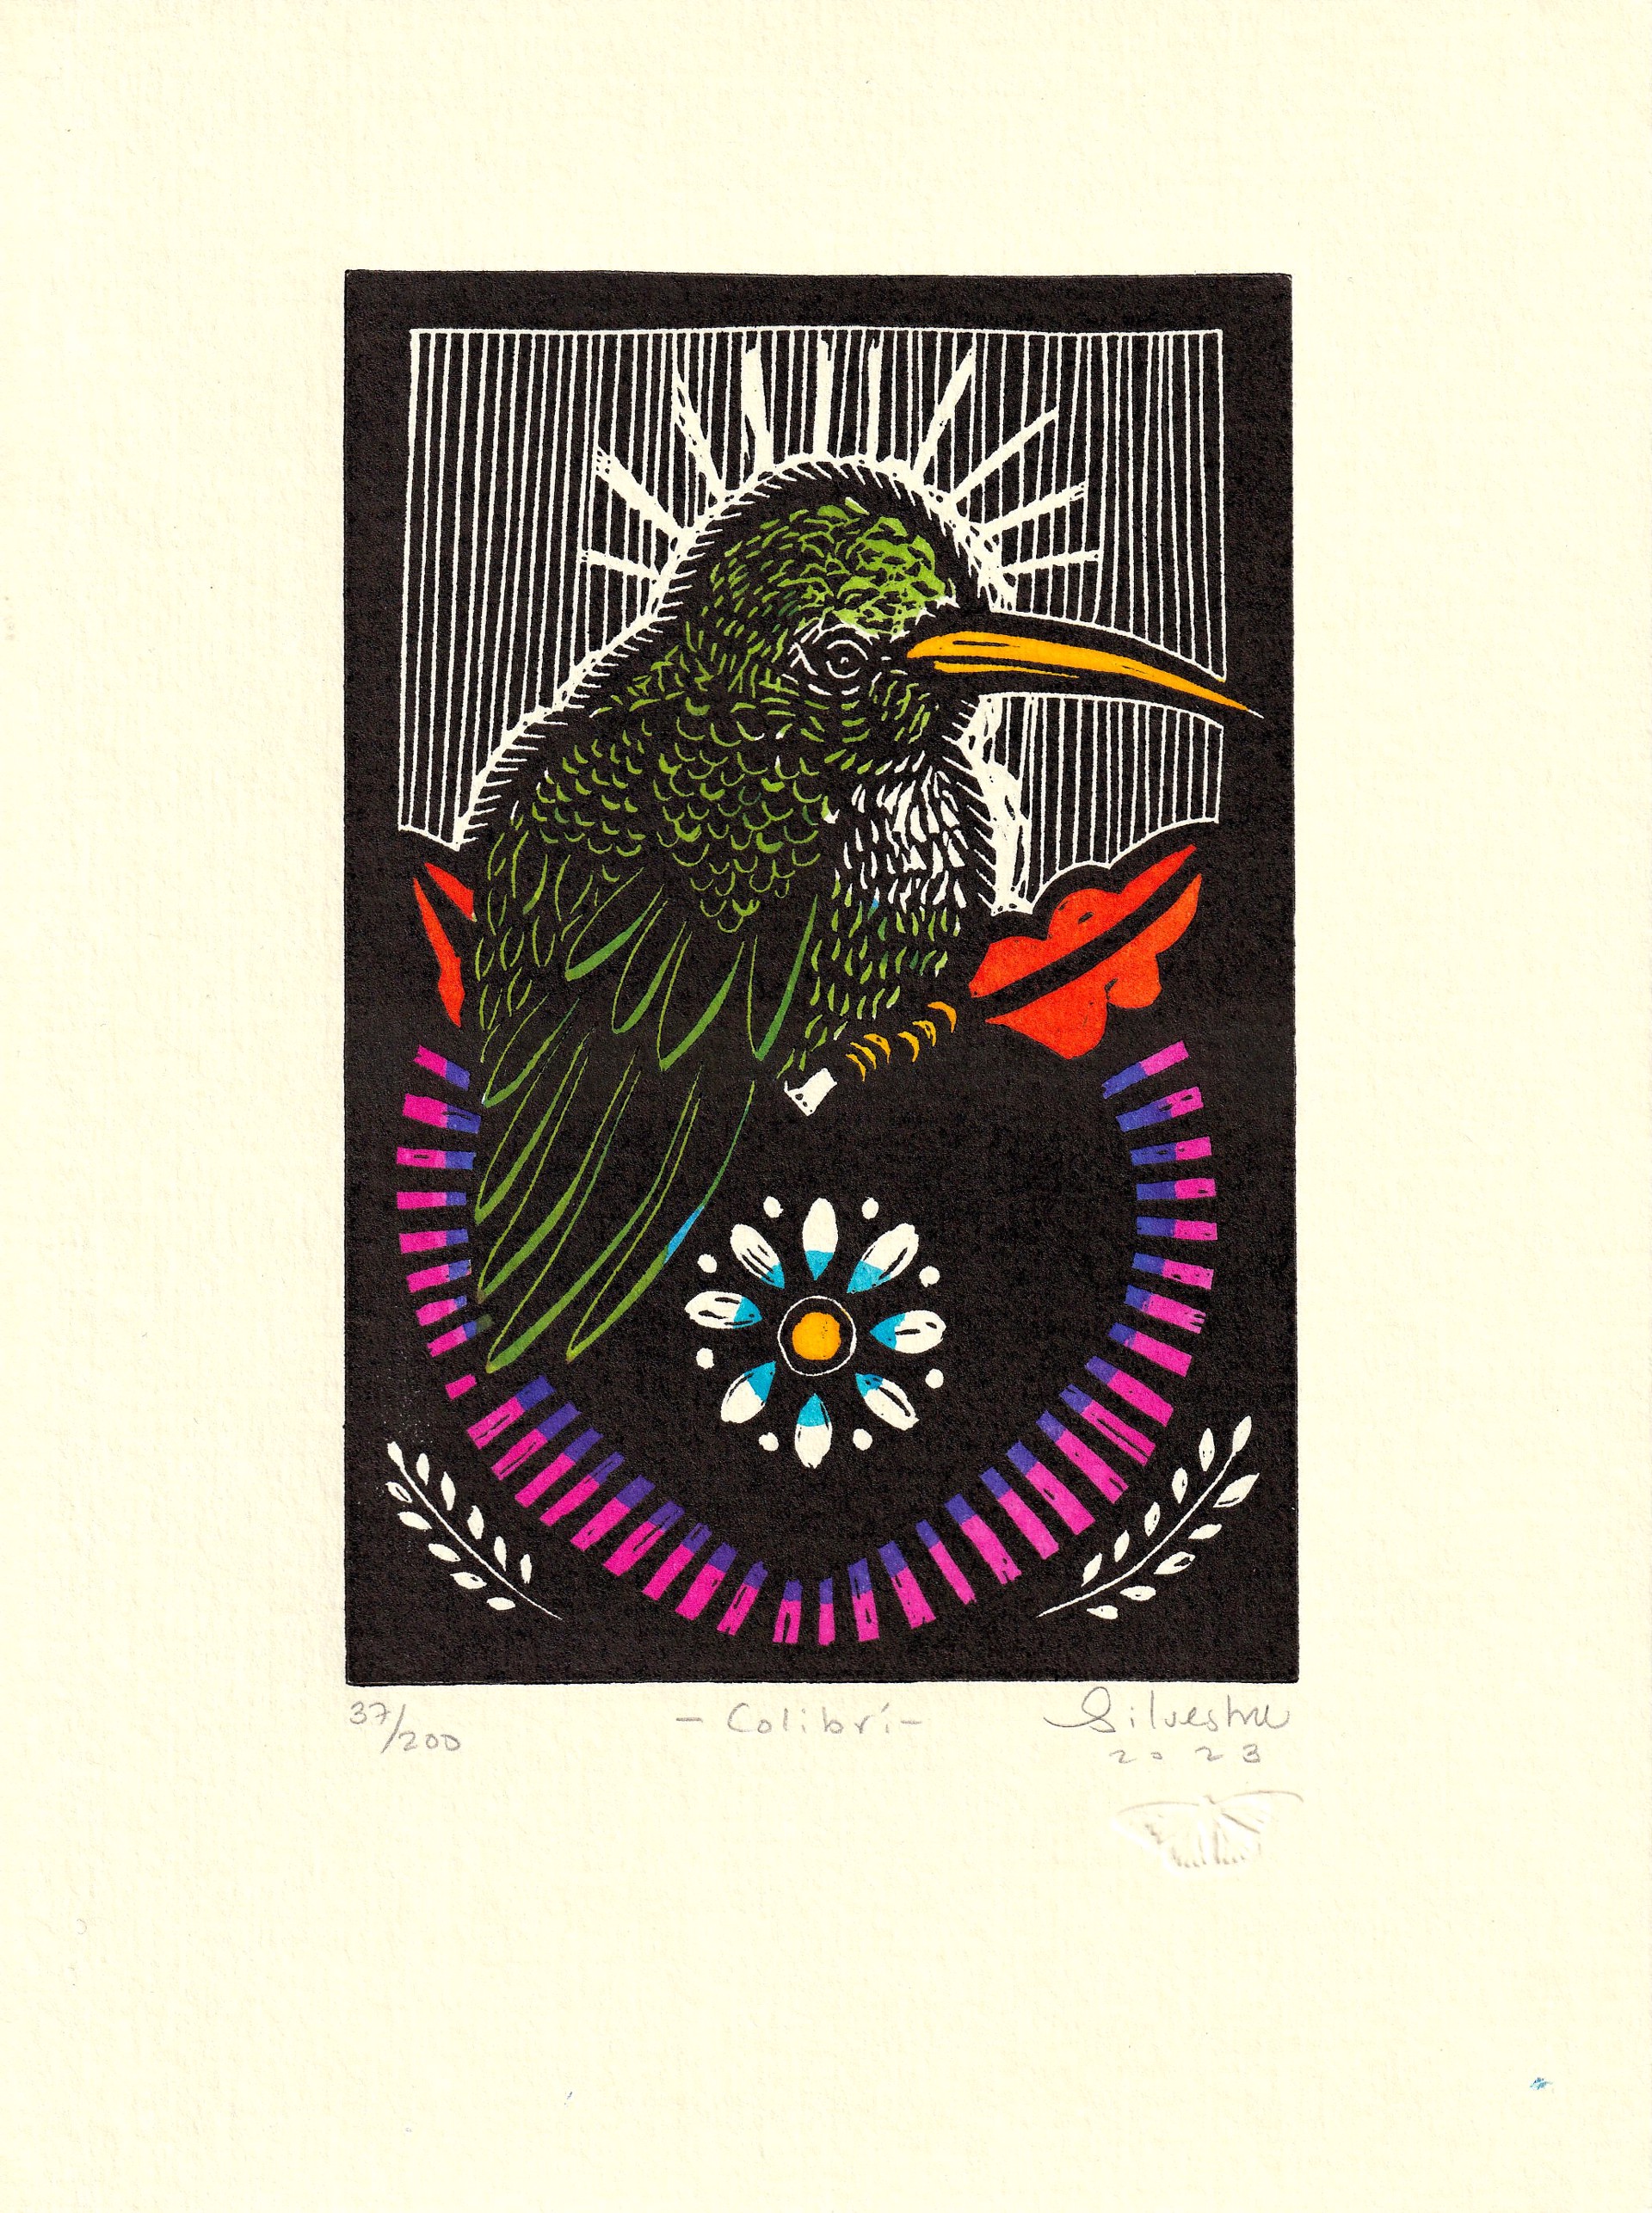 Colibri by Jainite Silvestre